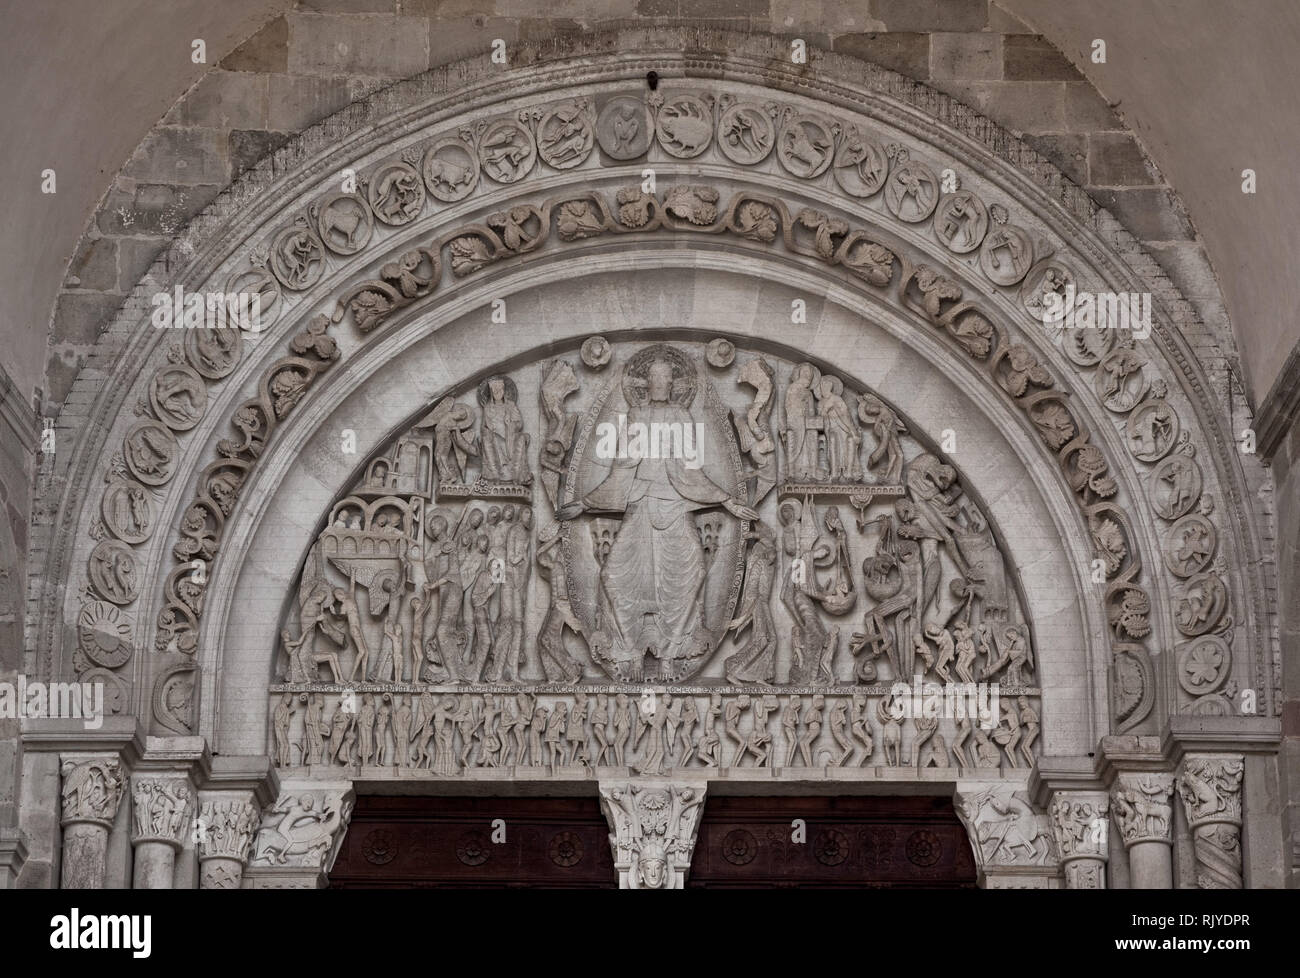 Autun,  Cathedrale St-Lazare , Weltgerichtsportal um 1135 von Meister Gislebertus, Tympanon mit Christus in der Mandorla sowie Auserwählten und Verdam Stock Photo